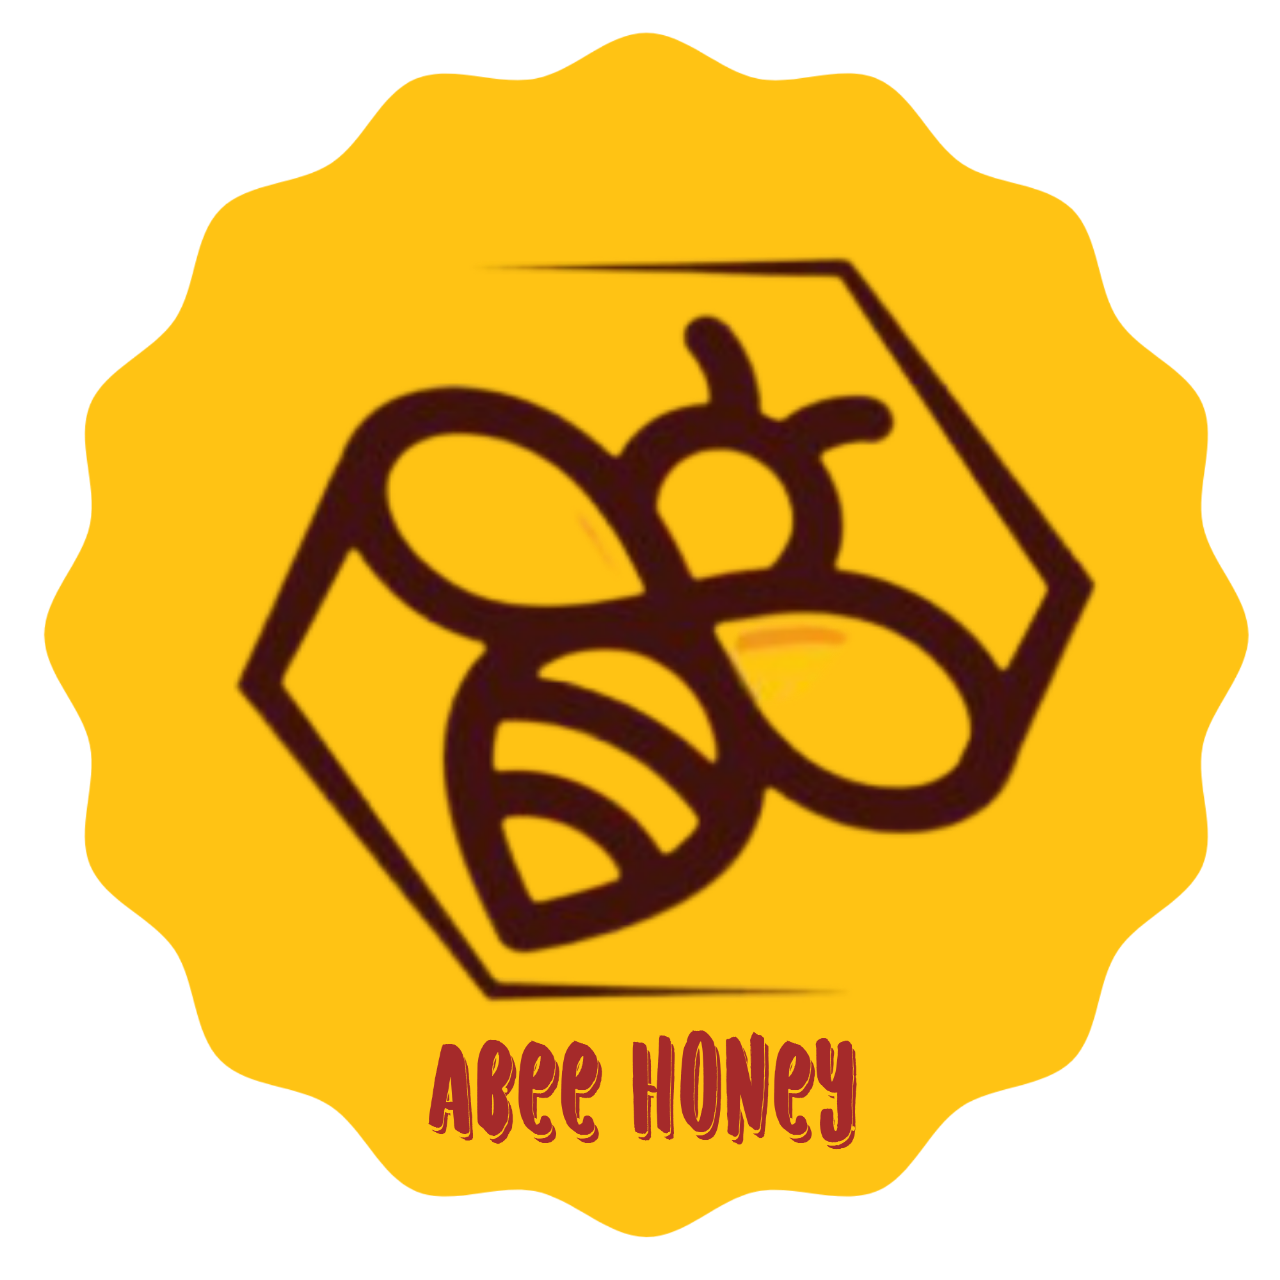 Abee Honey